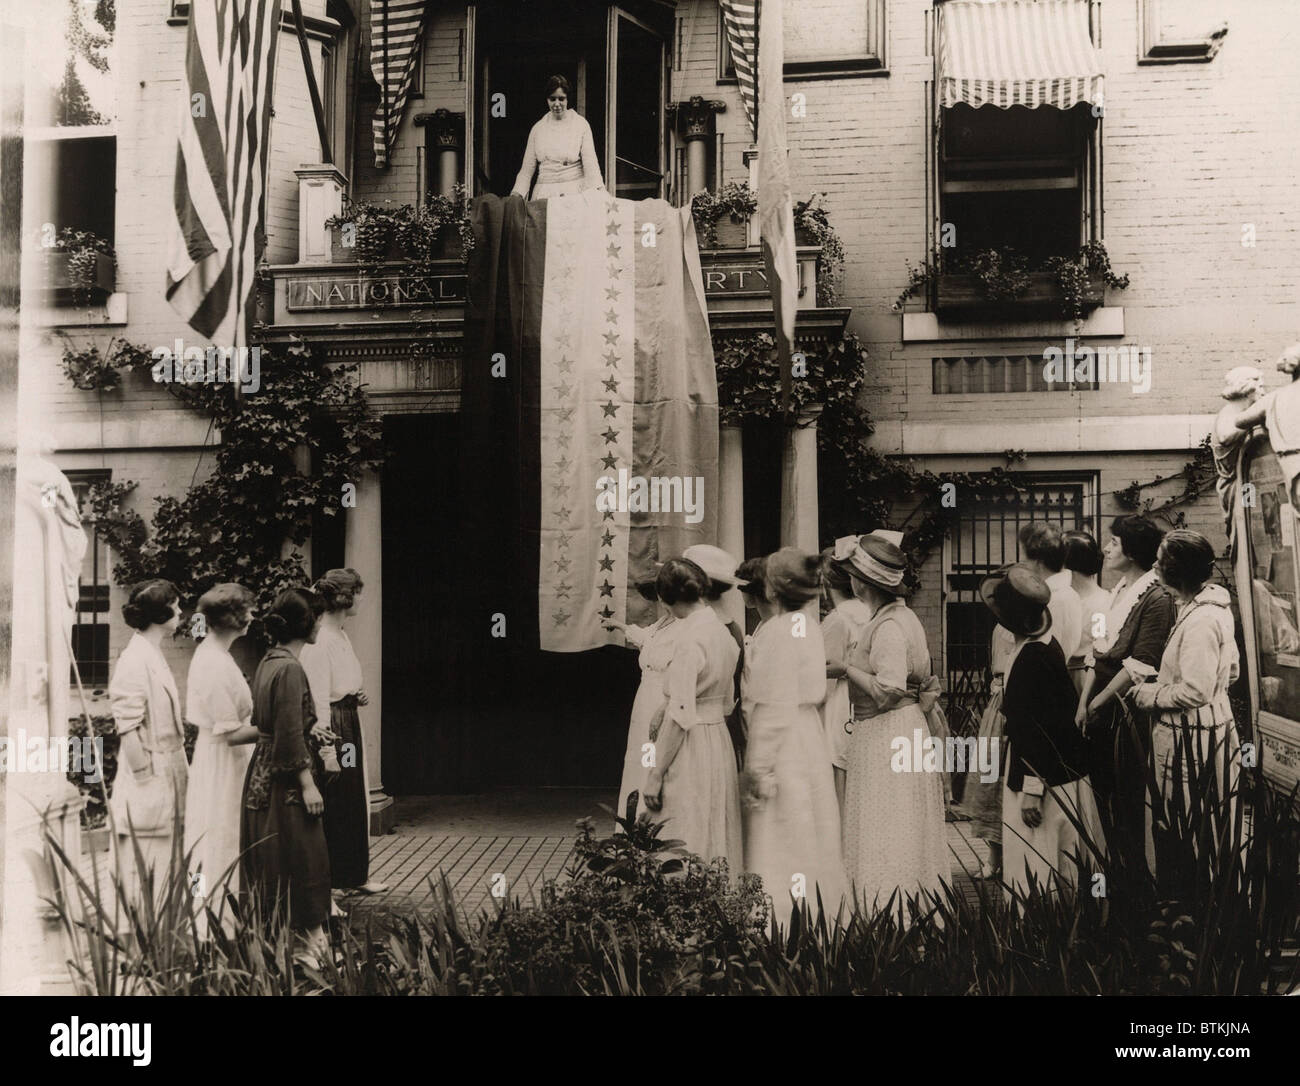 Cuando Tennessee se convirtió en el estado número 36 en ratificar la enmienda sobre el sufragio femenino Aug 18 1920, Alice Paul develada el Nacional Foto de stock